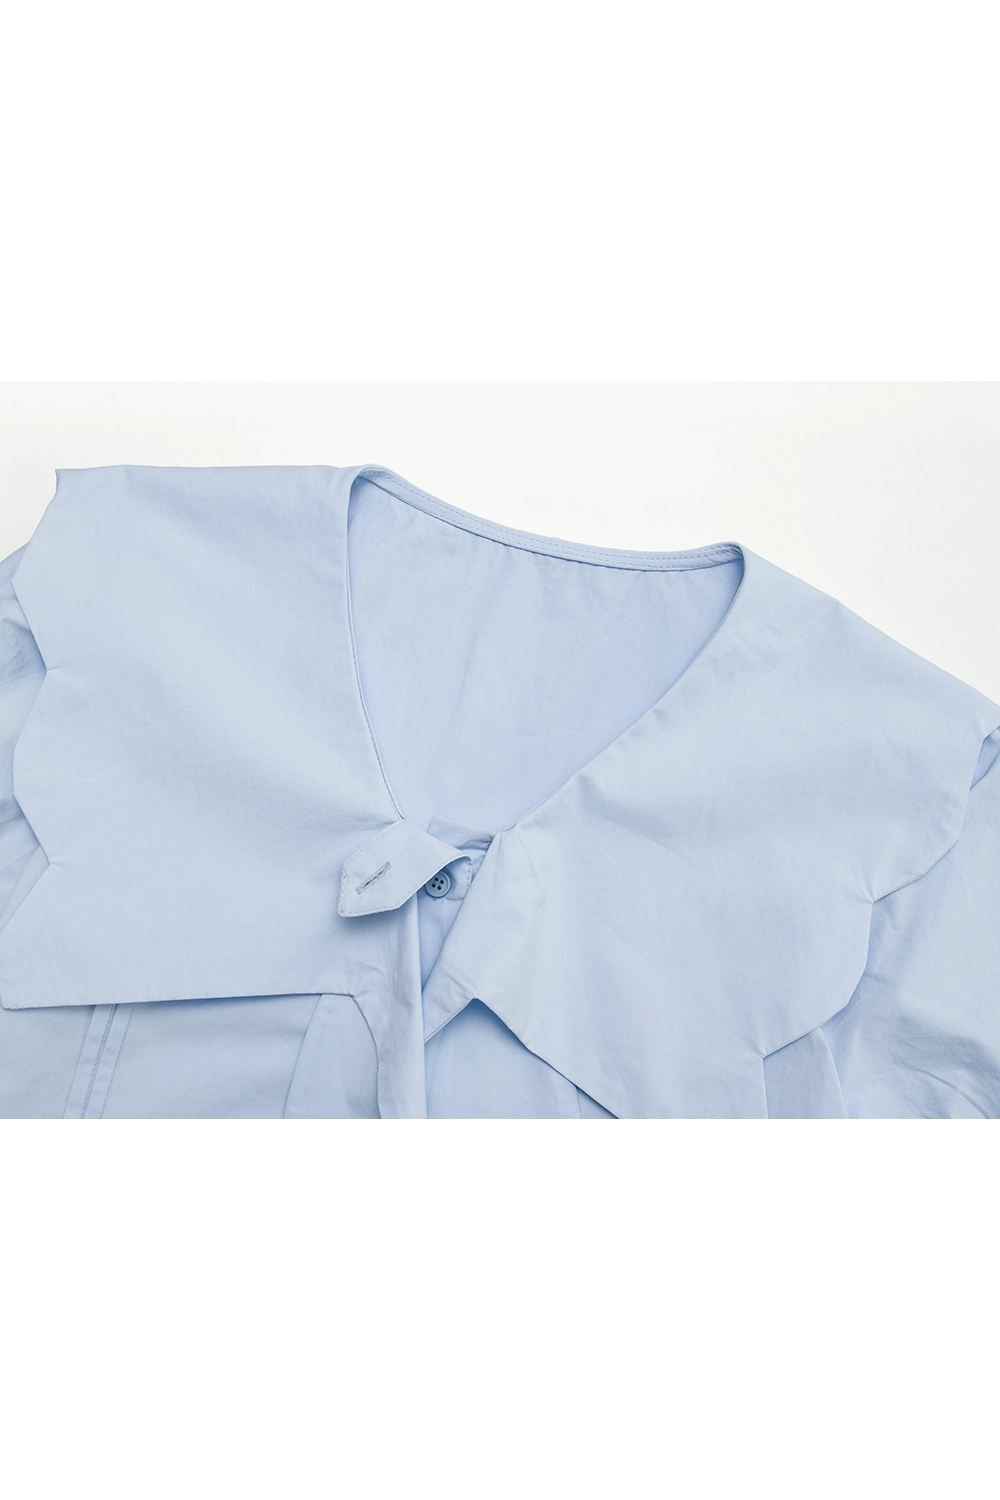 Chemise femme bleu clair à manches courtes nouée sur le devant